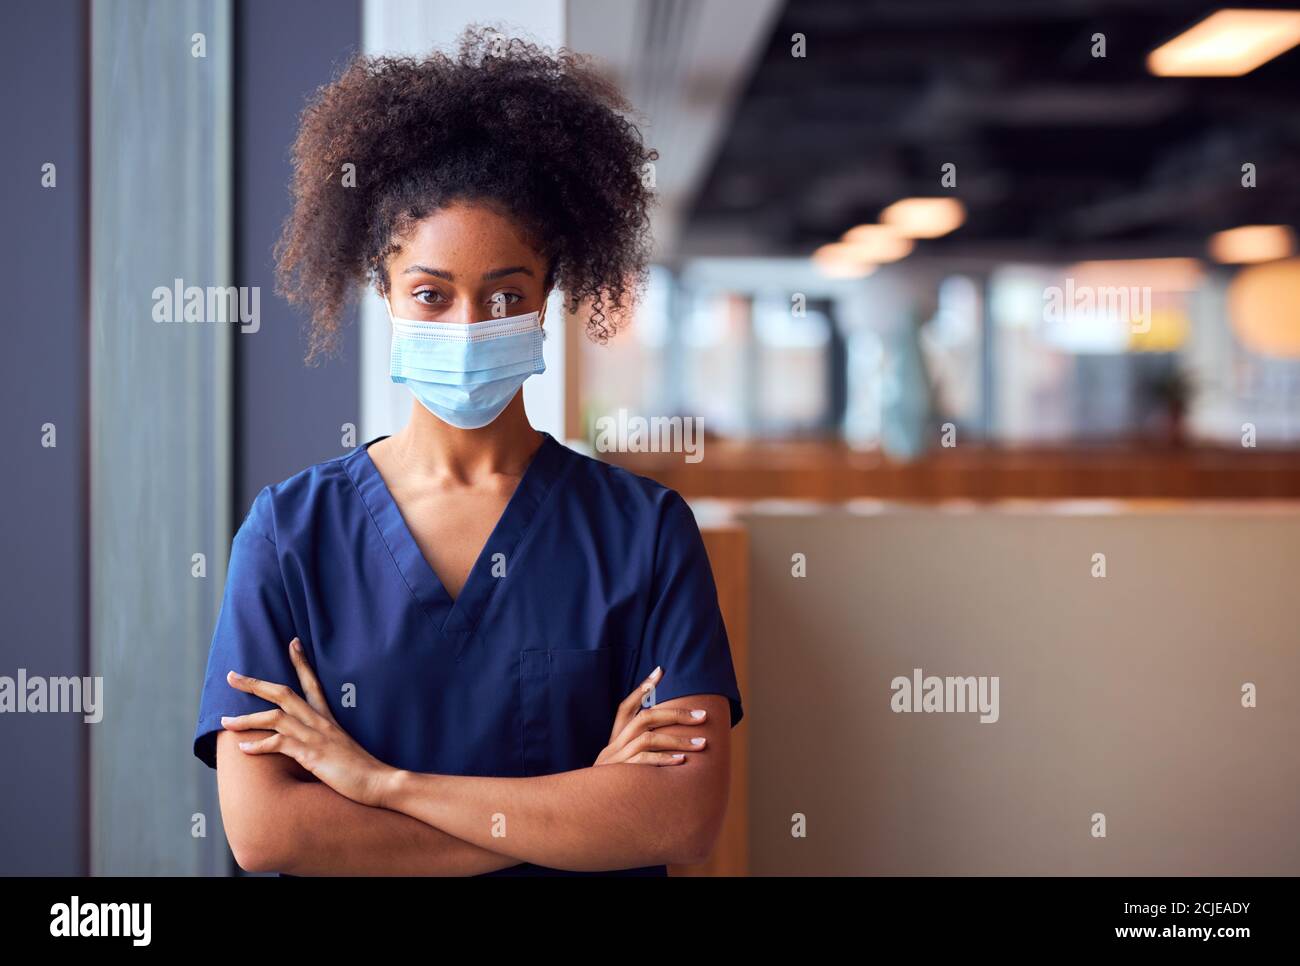 Mujer Doctora en máscara facial usando exfoliantes bajo presión en Hospital ocupado durante una pandemia de salud Foto de stock